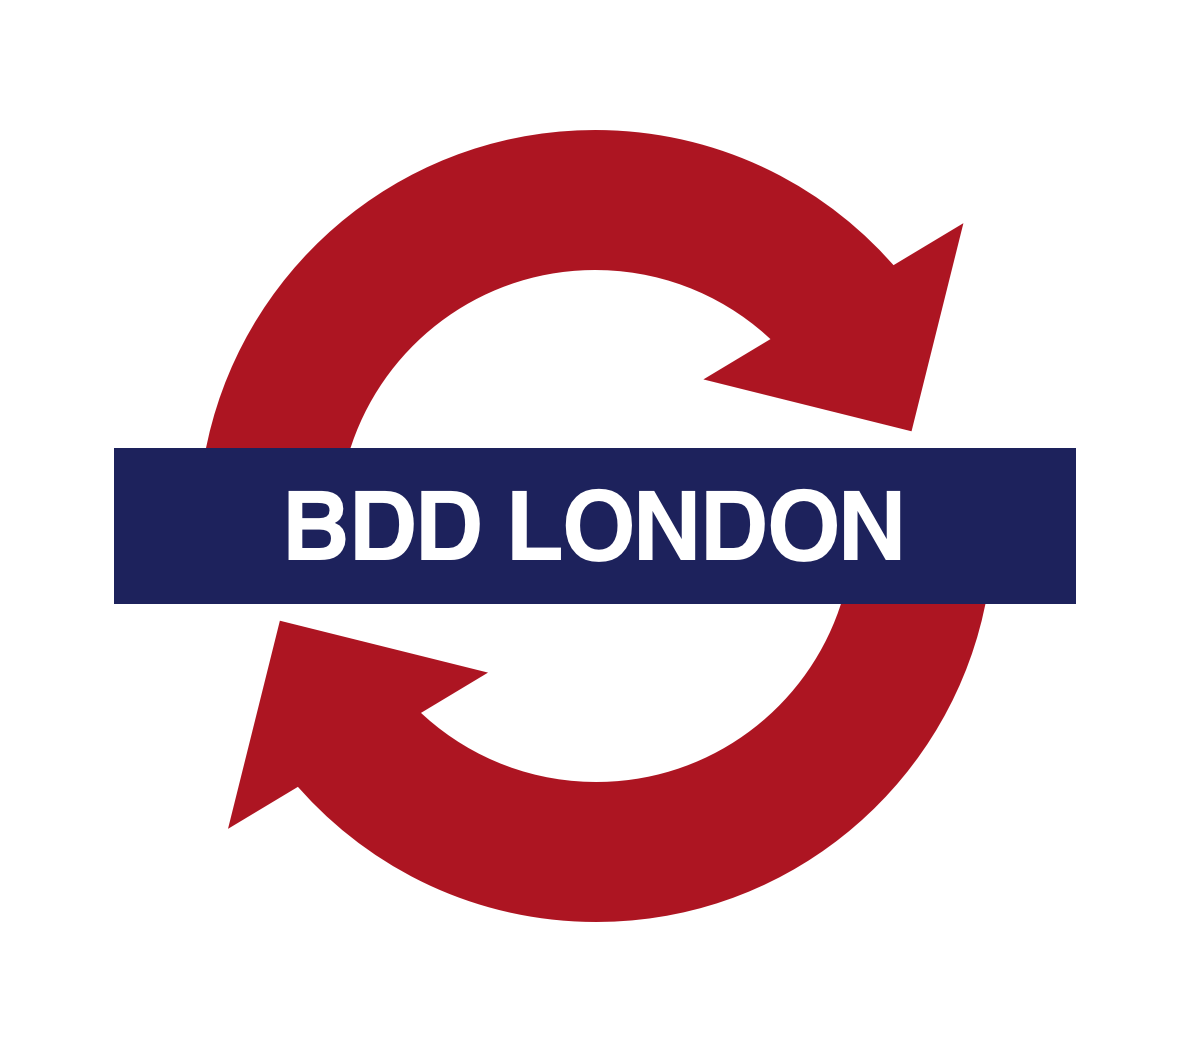 BDD Logo - BDD London